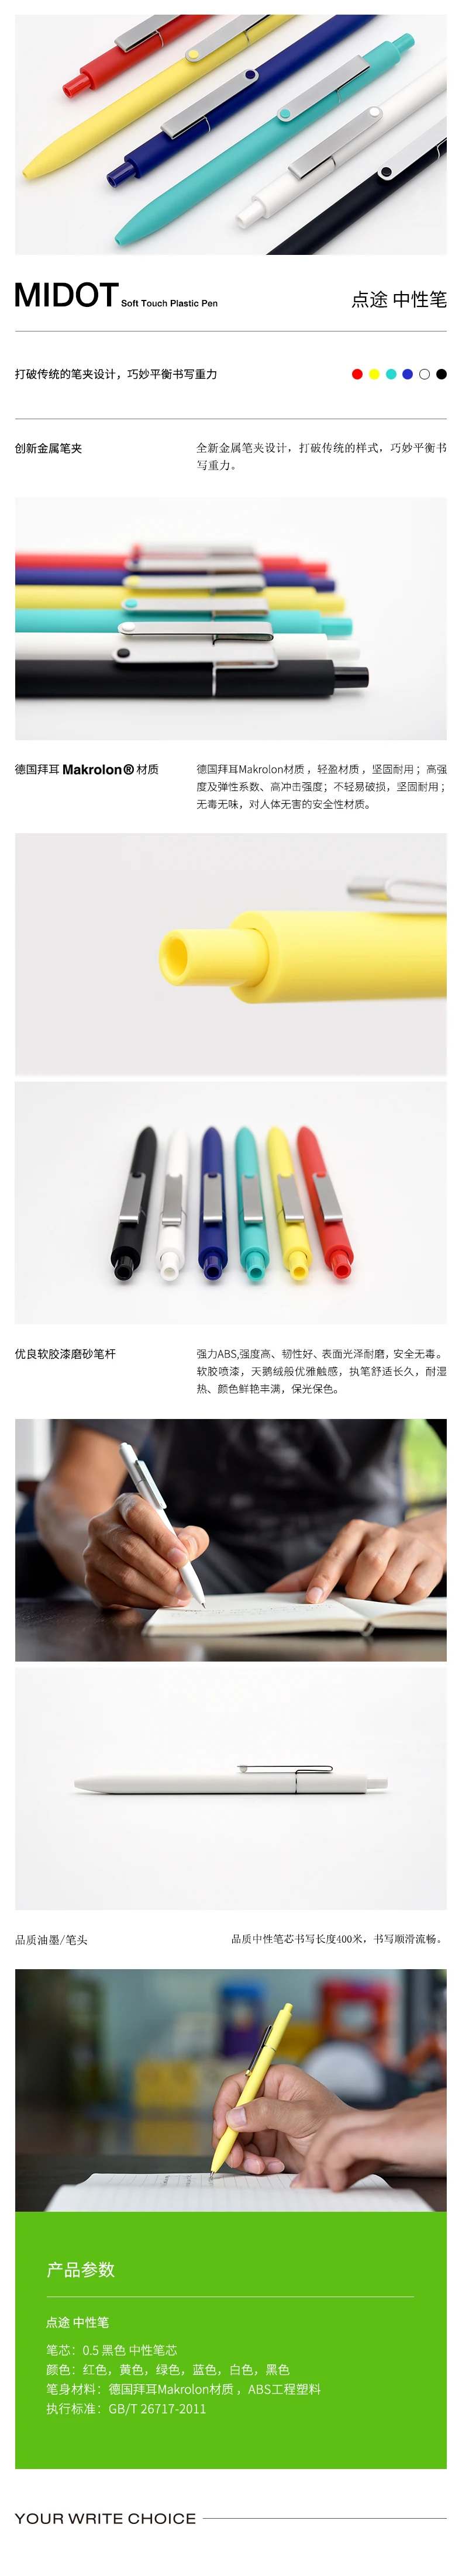 KACO мерами гелевая ручка простой сплошной Цвет 0,5 мм Офис Студент подписания Ручка гелевая ручка 1/5 шт